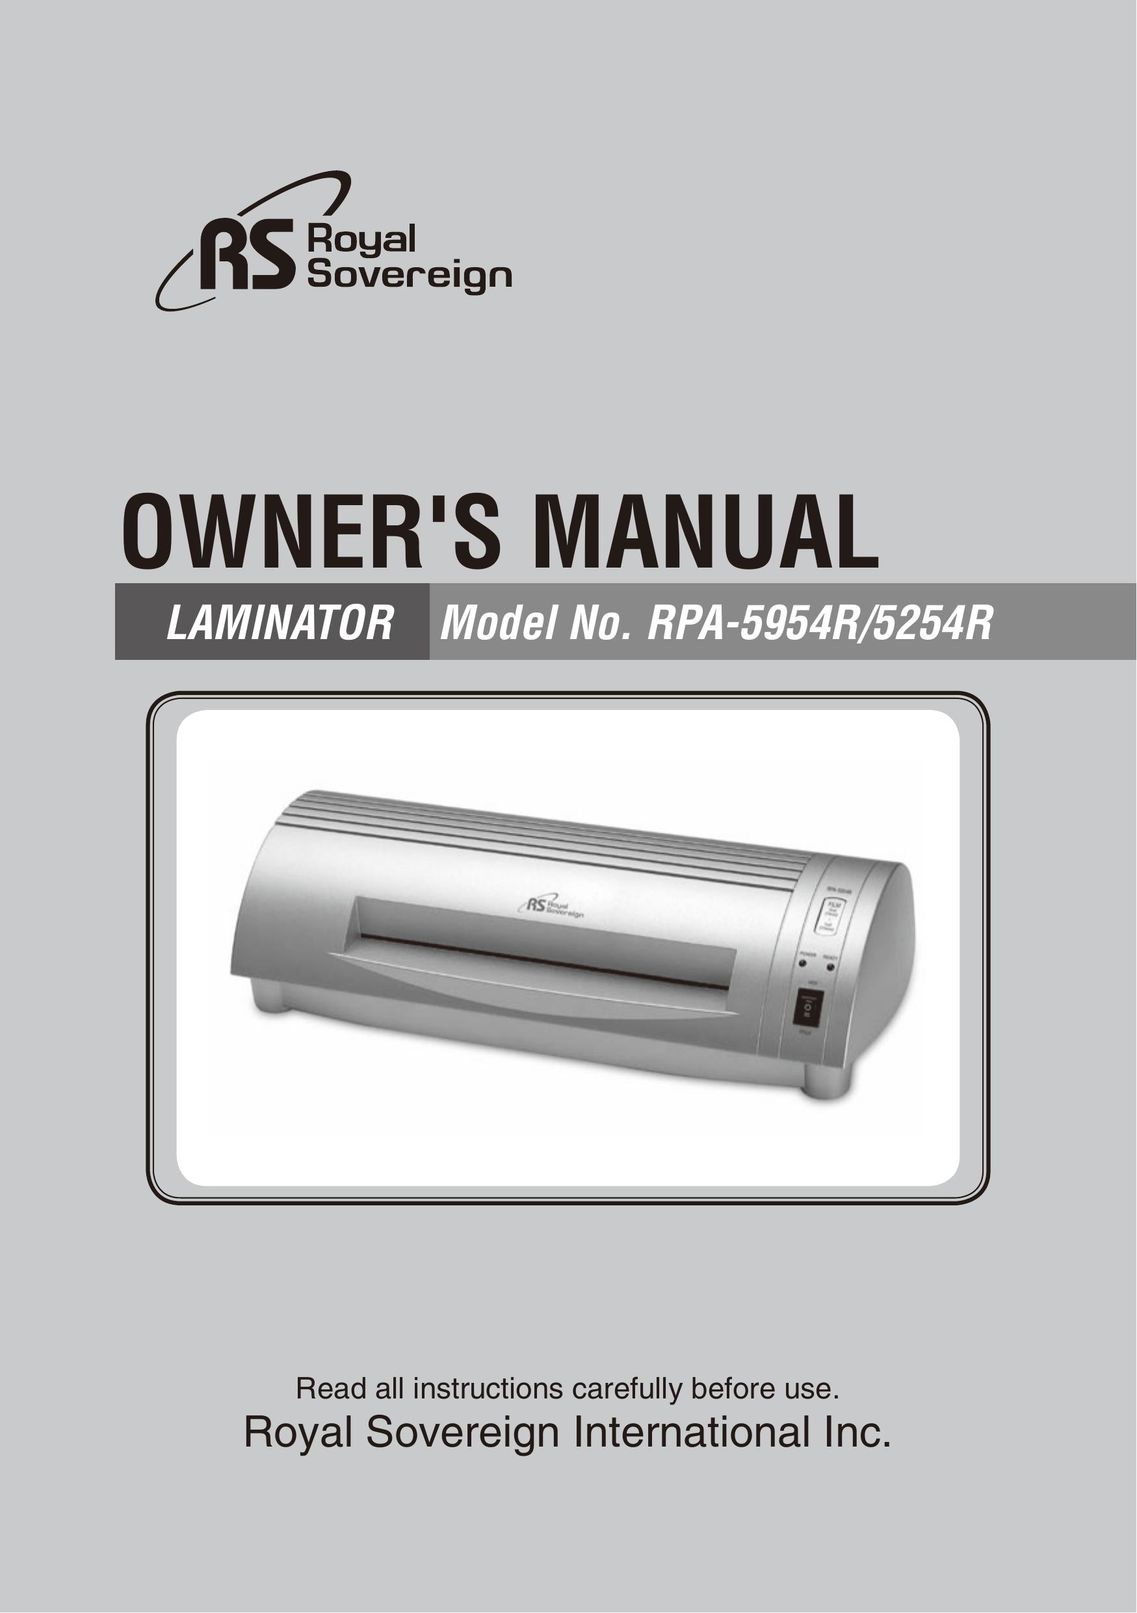 Royal Sovereign RPA-5954R Laminator User Manual